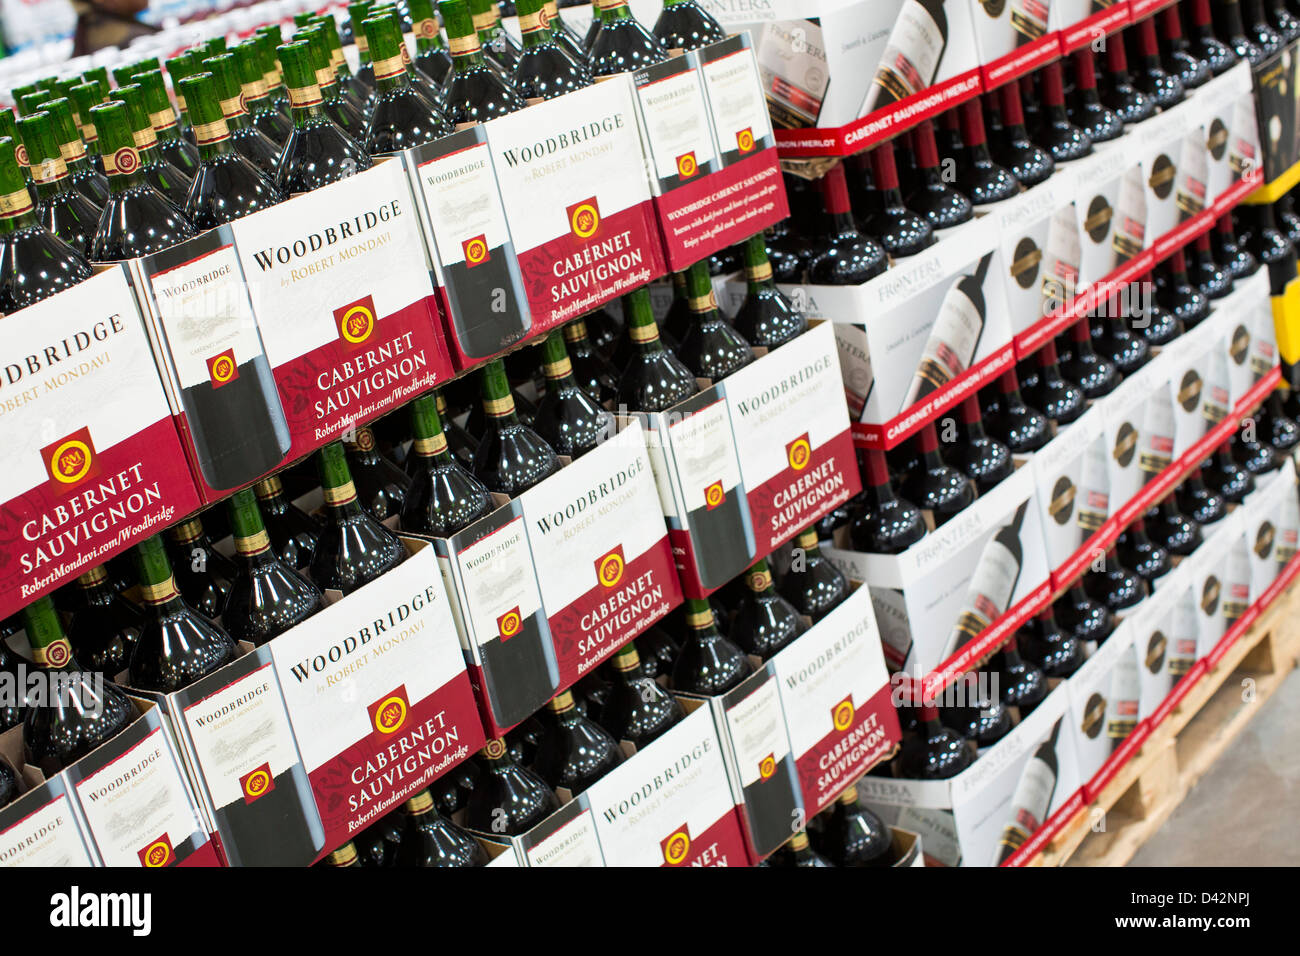 Woodbridge cabernet sauvignon vino sul visualizzatore in corrispondenza di un Costco Wholesale Club magazzino. Foto Stock